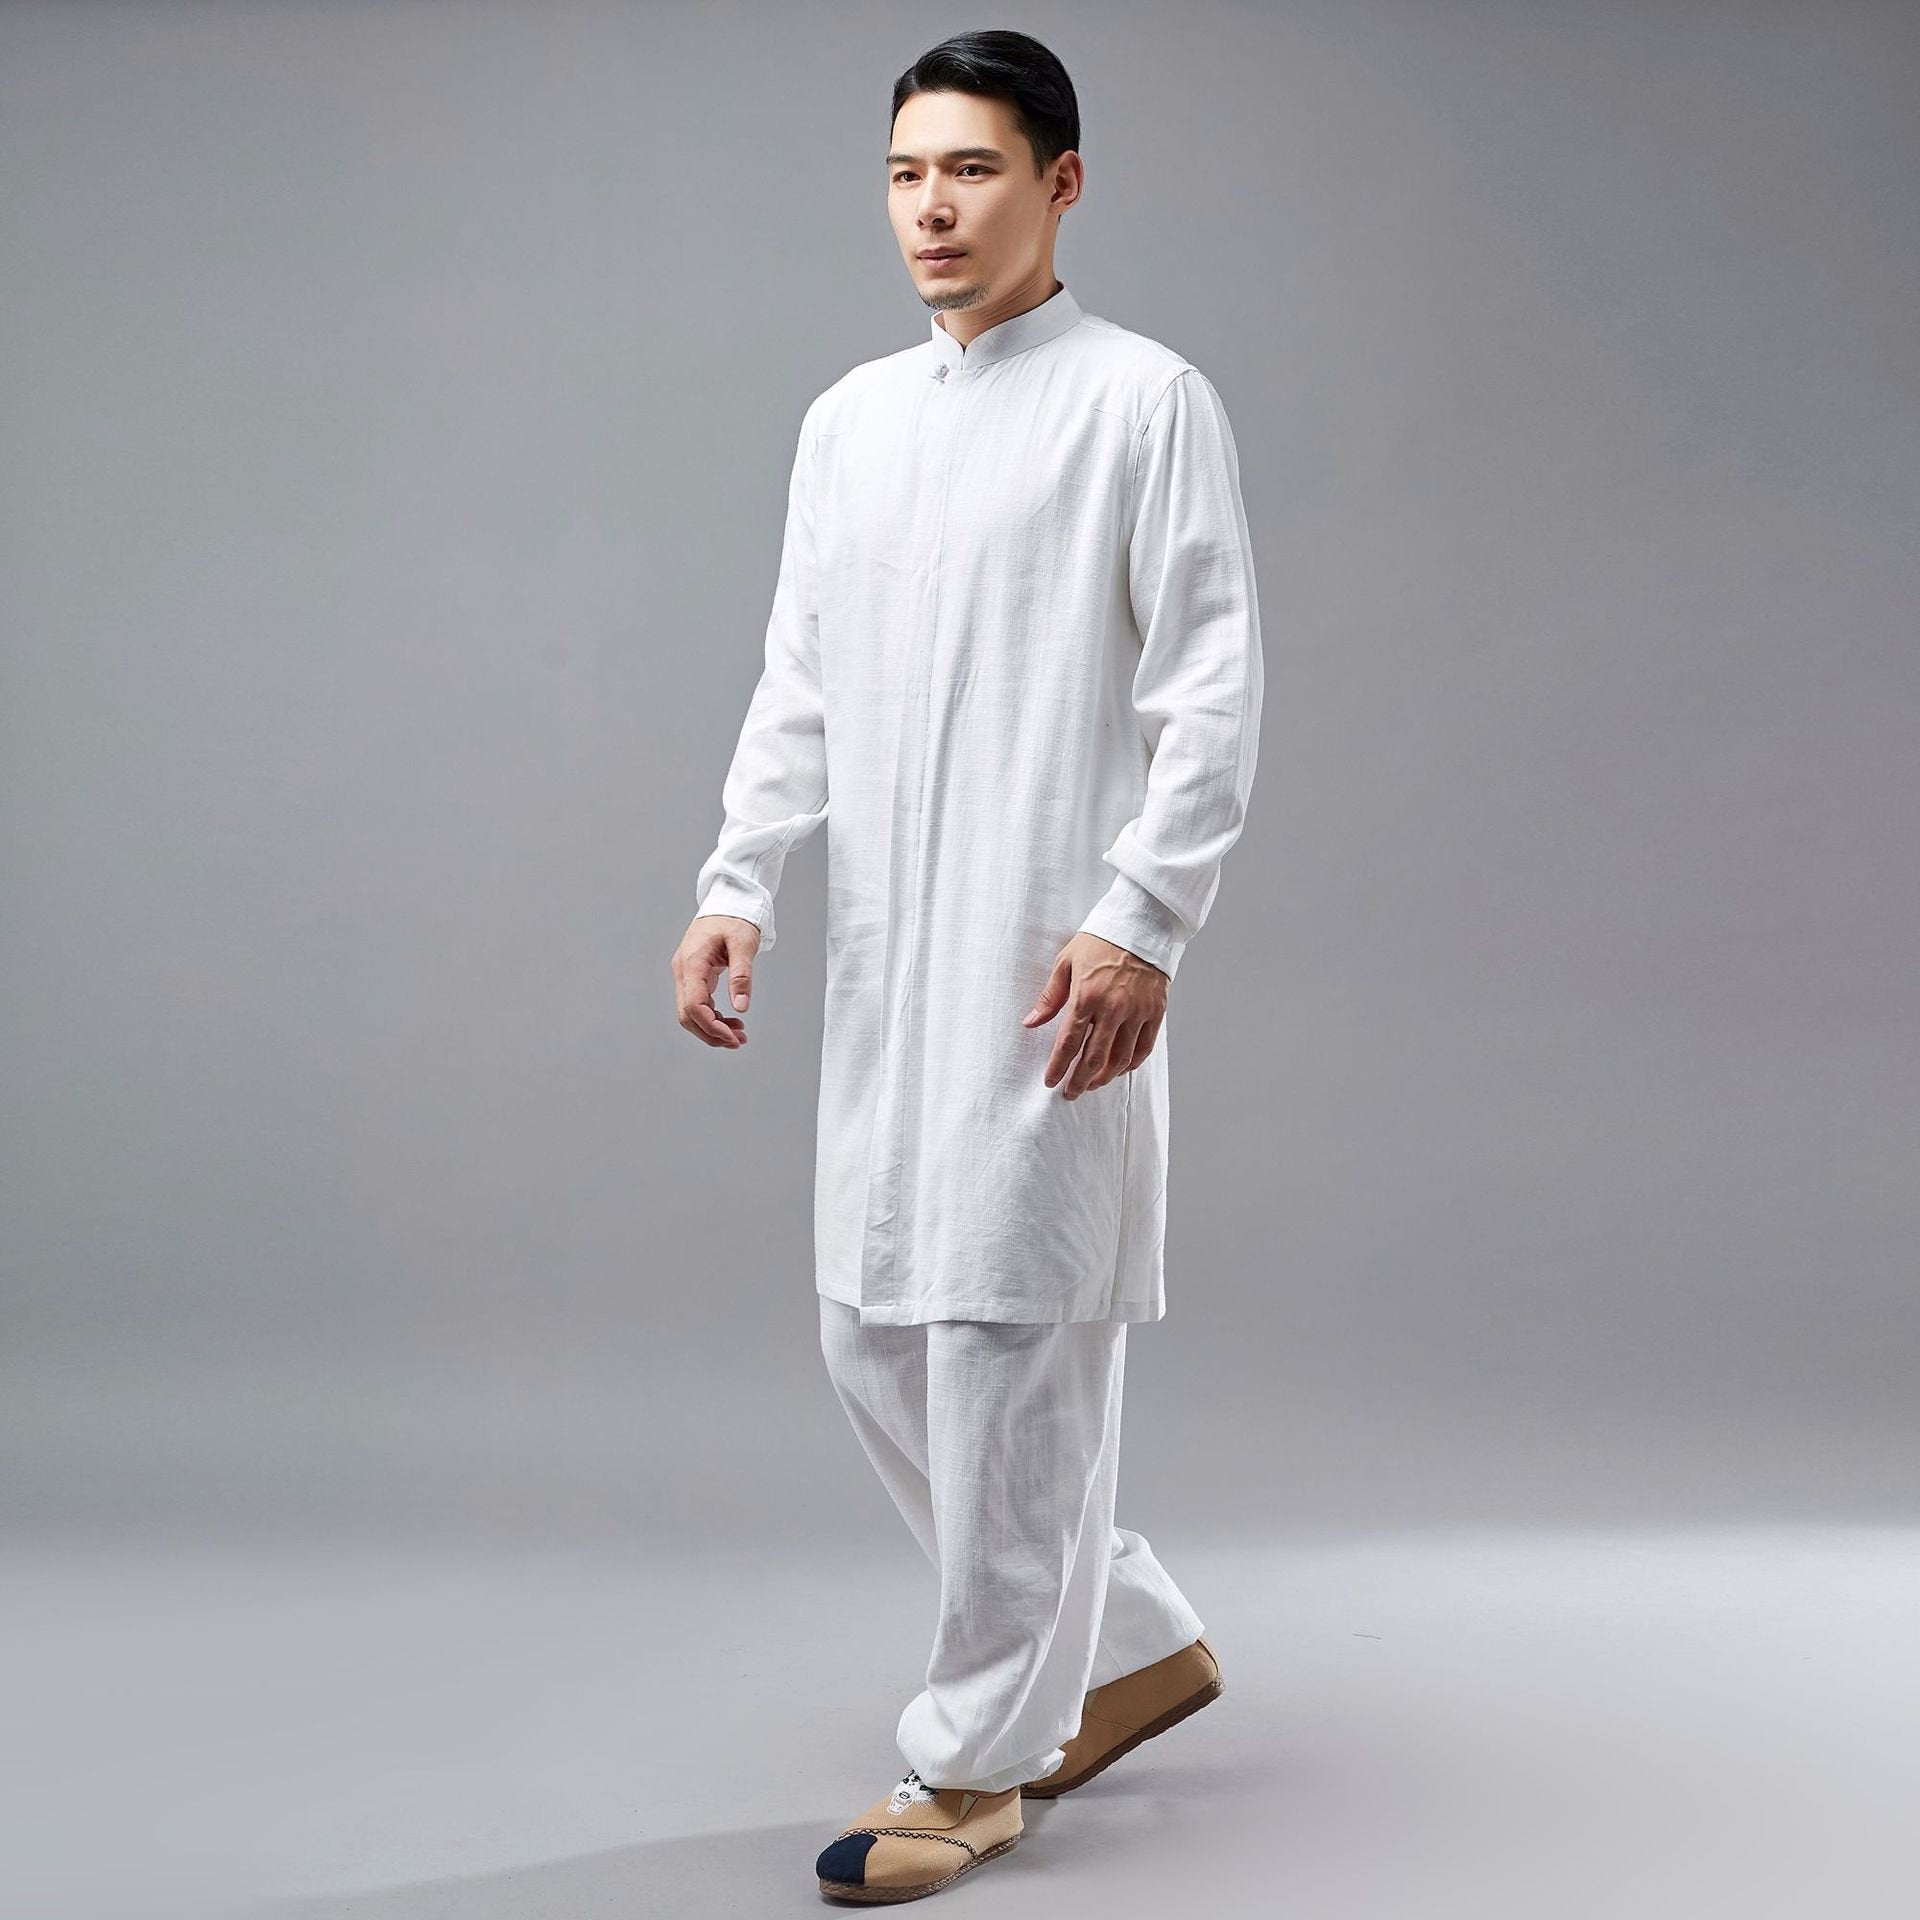 White Cotton Classic Shirt, Tunic, Kurta for Woman or Man – Tibet